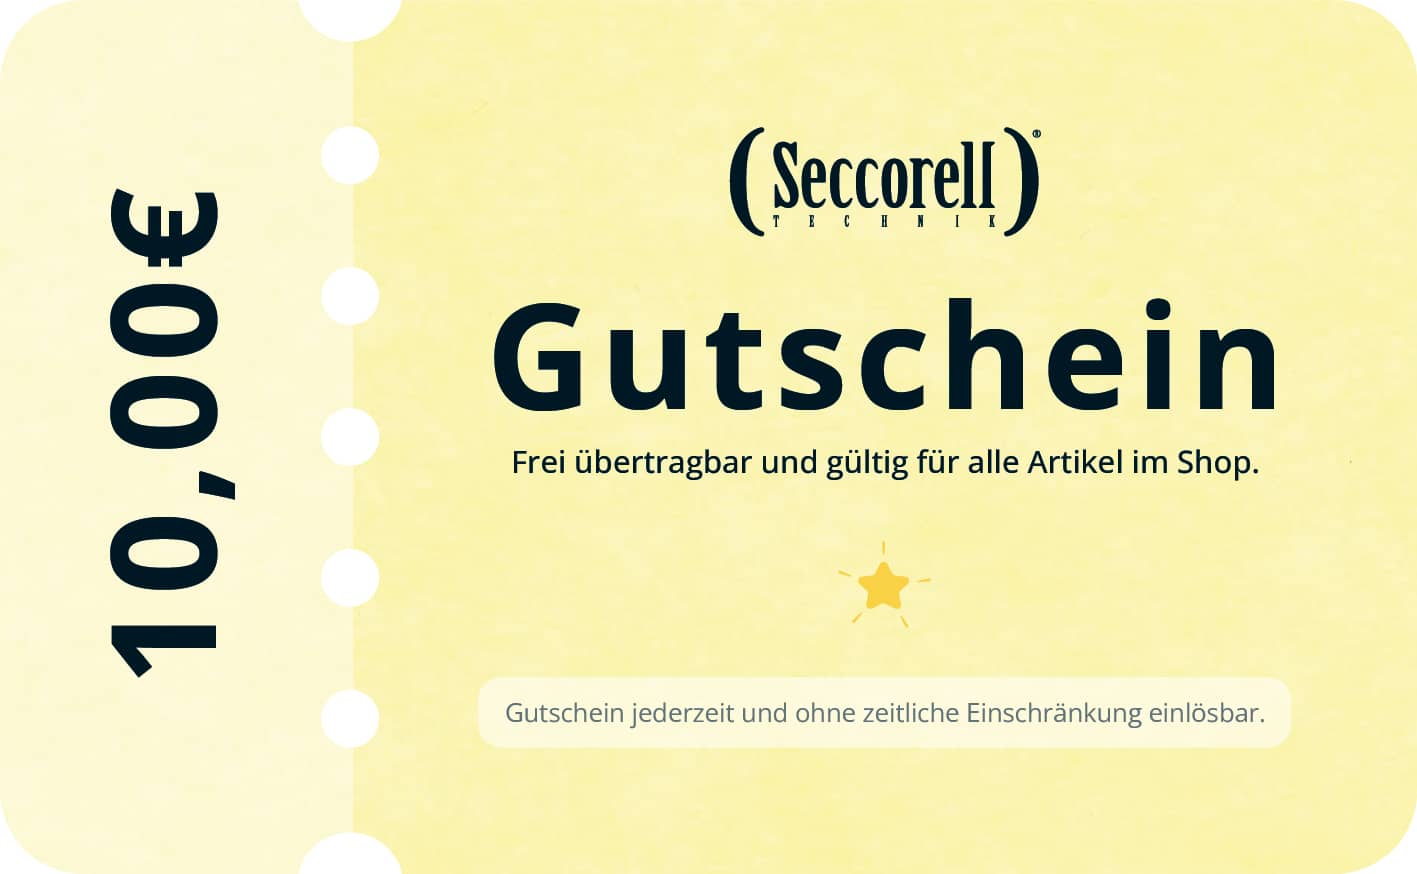 Seccorell-Gutschein digital